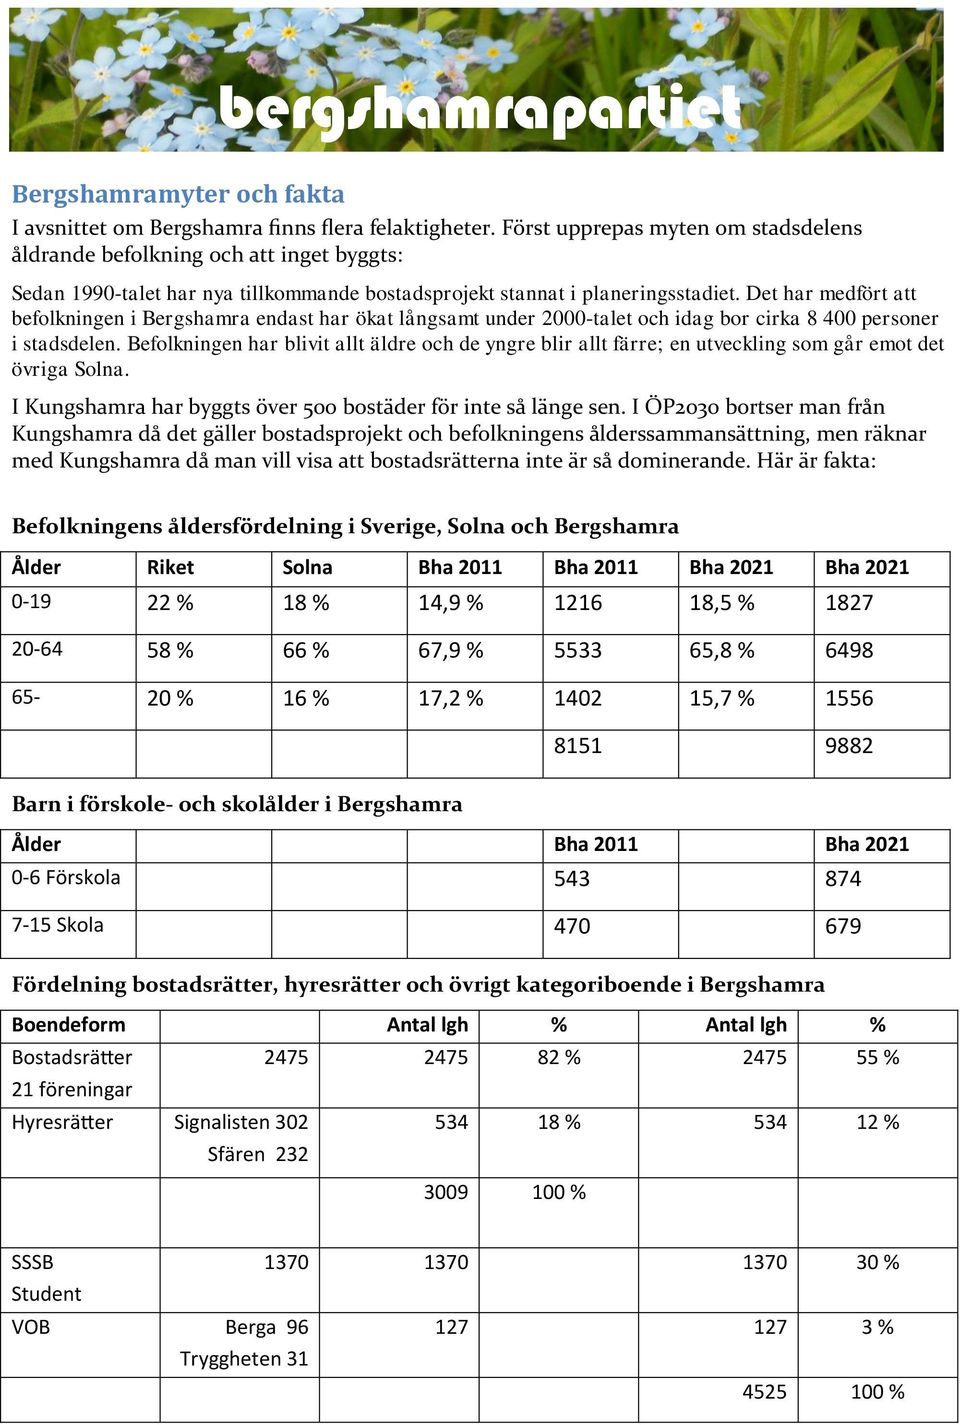 Det har medfört att befolkningen i Bergshamra endast har ökat långsamt under 2000-talet och idag bor cirka 8 400 personer i stadsdelen.